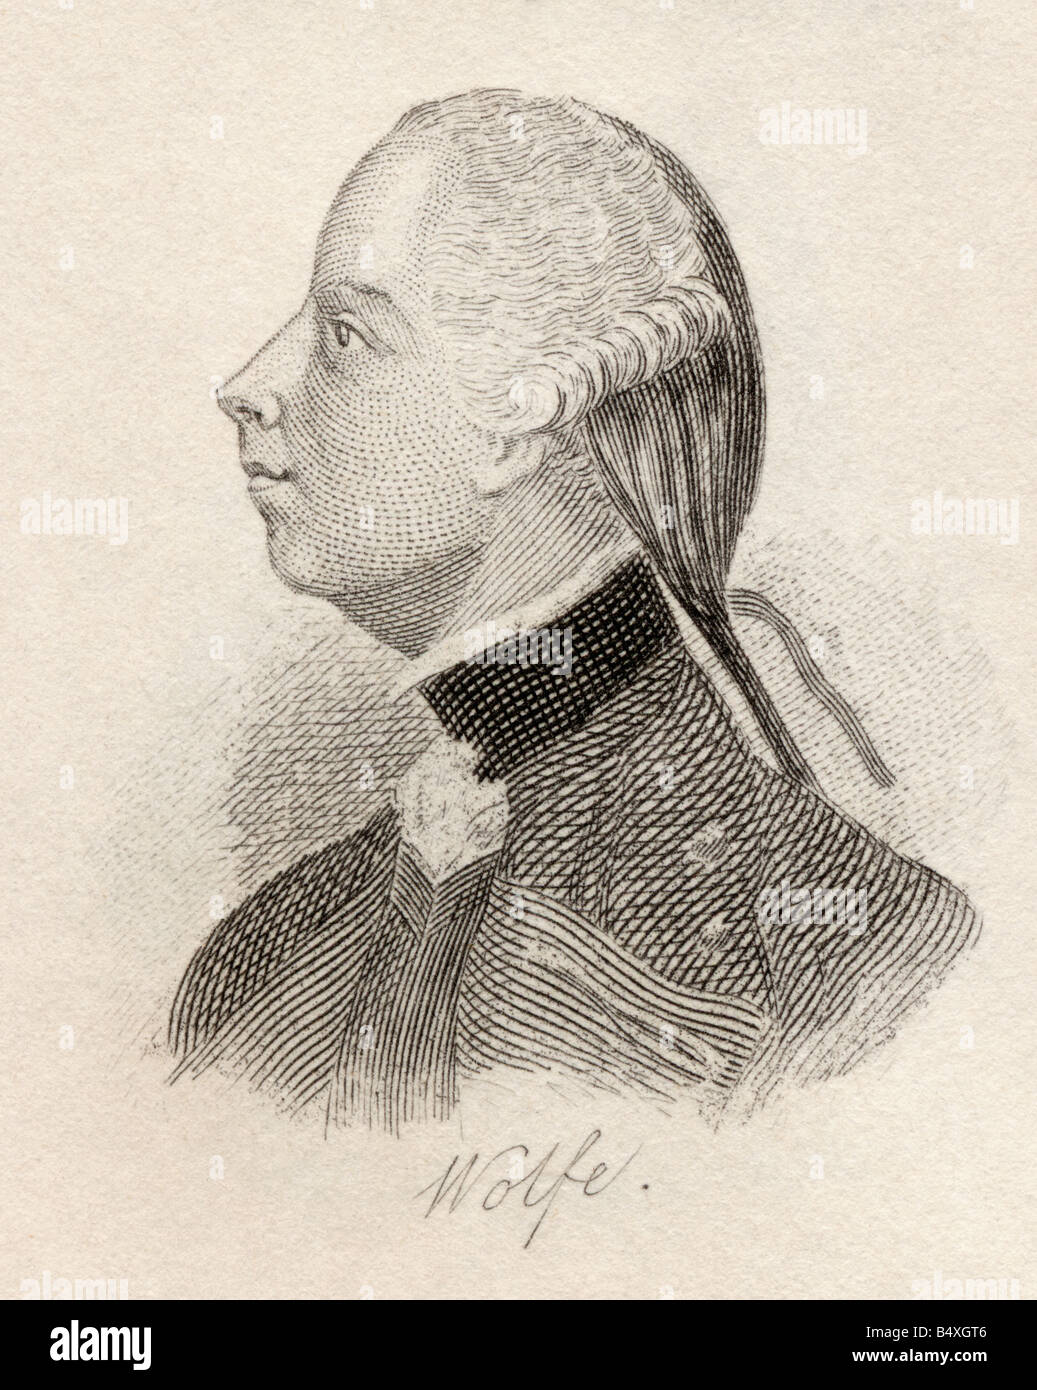 General James Wolfe, 1727 - 1759. Offizier und General der britischen Armee. Aus dem Buch Crabbs Historical Dictionary, veröffentlicht 1825. Stockfoto